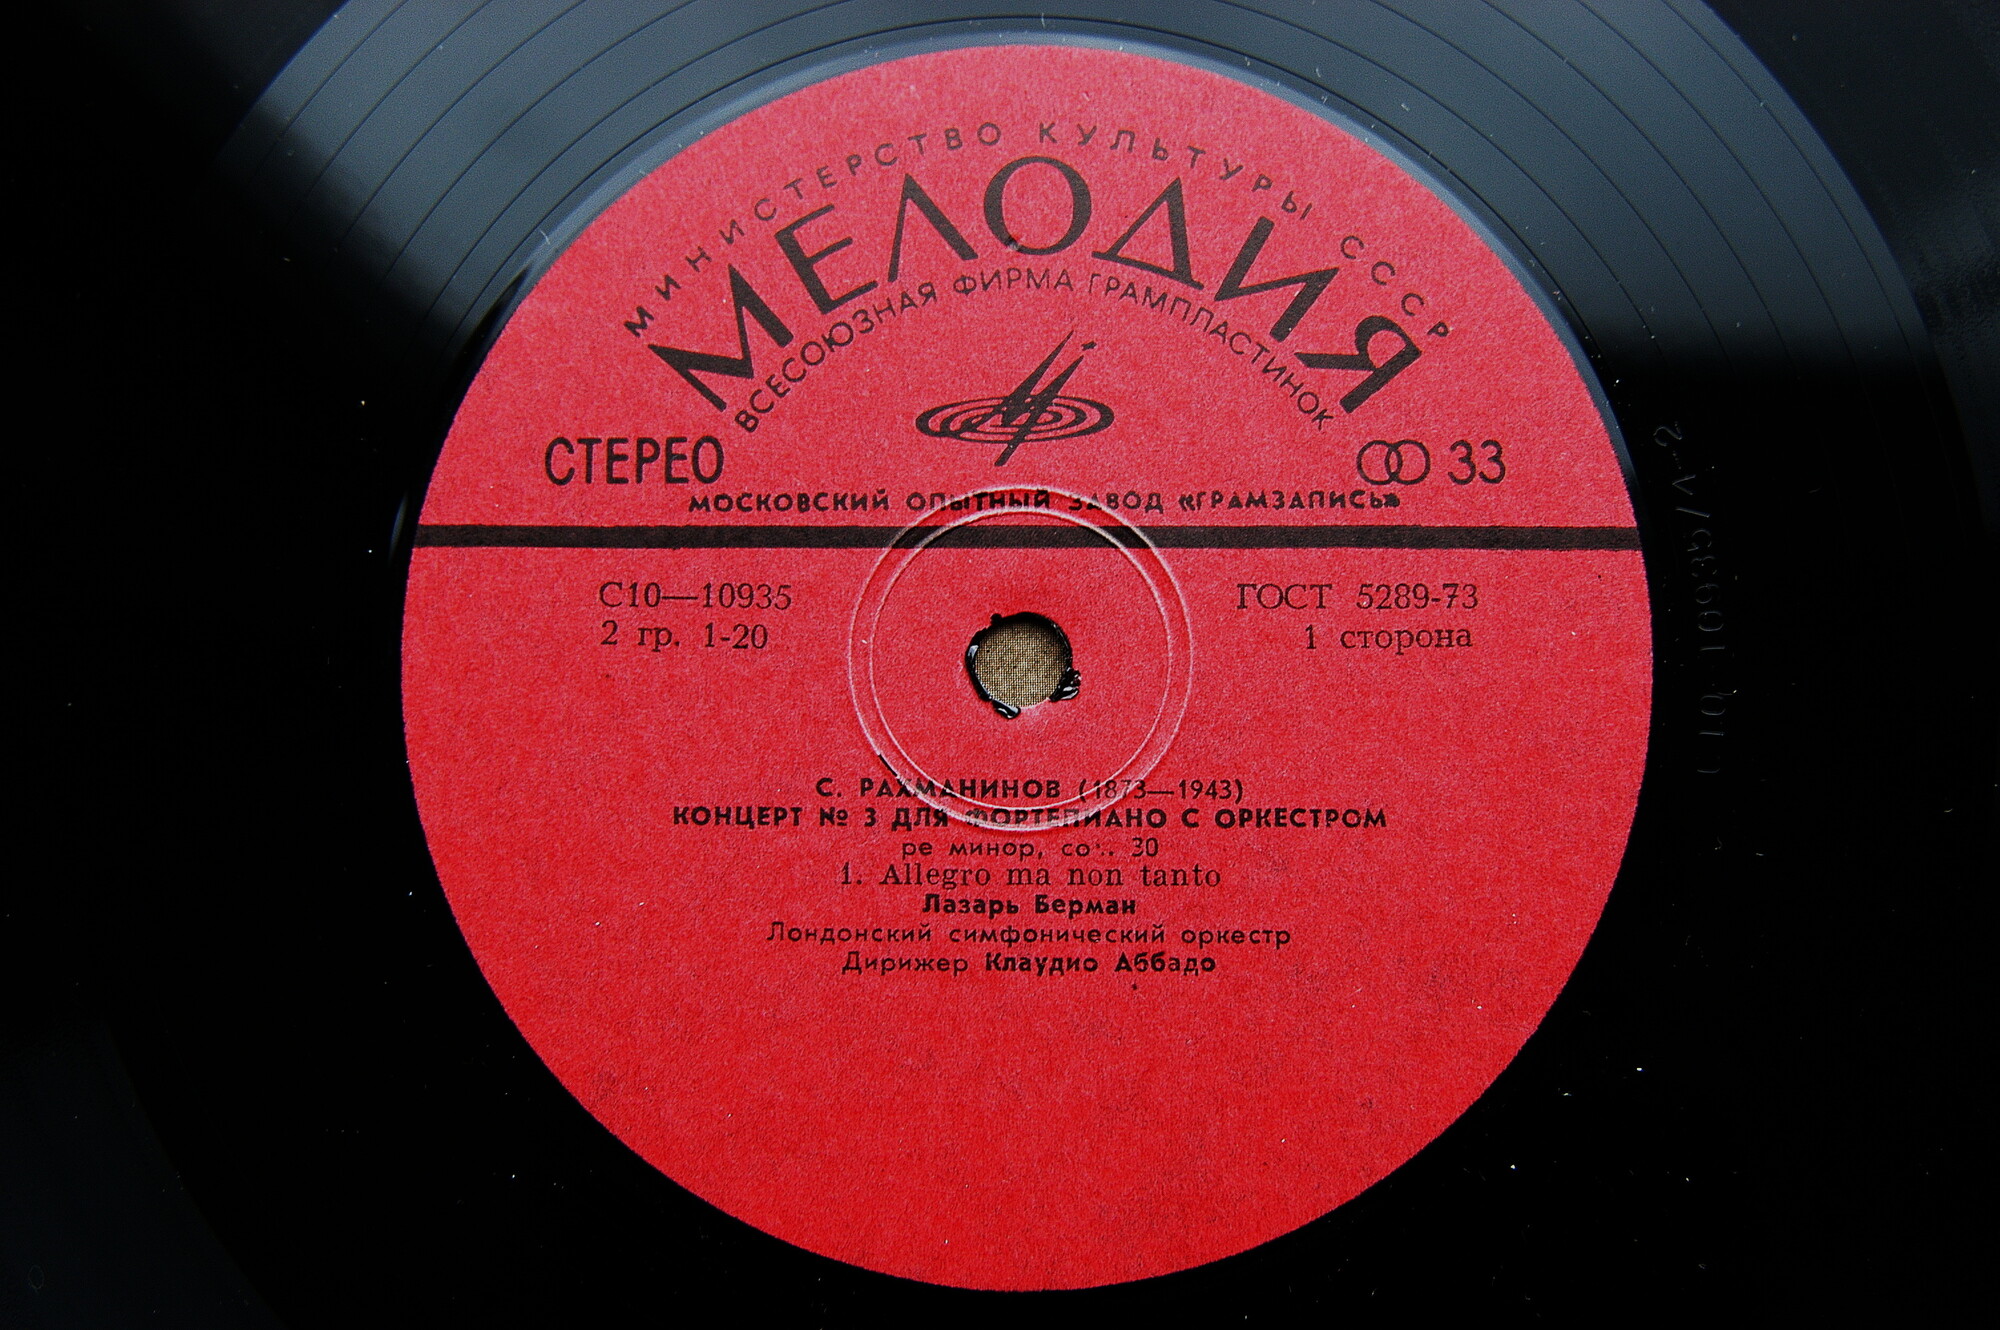 С. РАХМАНИНОВ (1873–1943): Концерт № 3 для ф-но с оркестром ре минор, соч. 30 (Л. Берман, К. Аббадо)